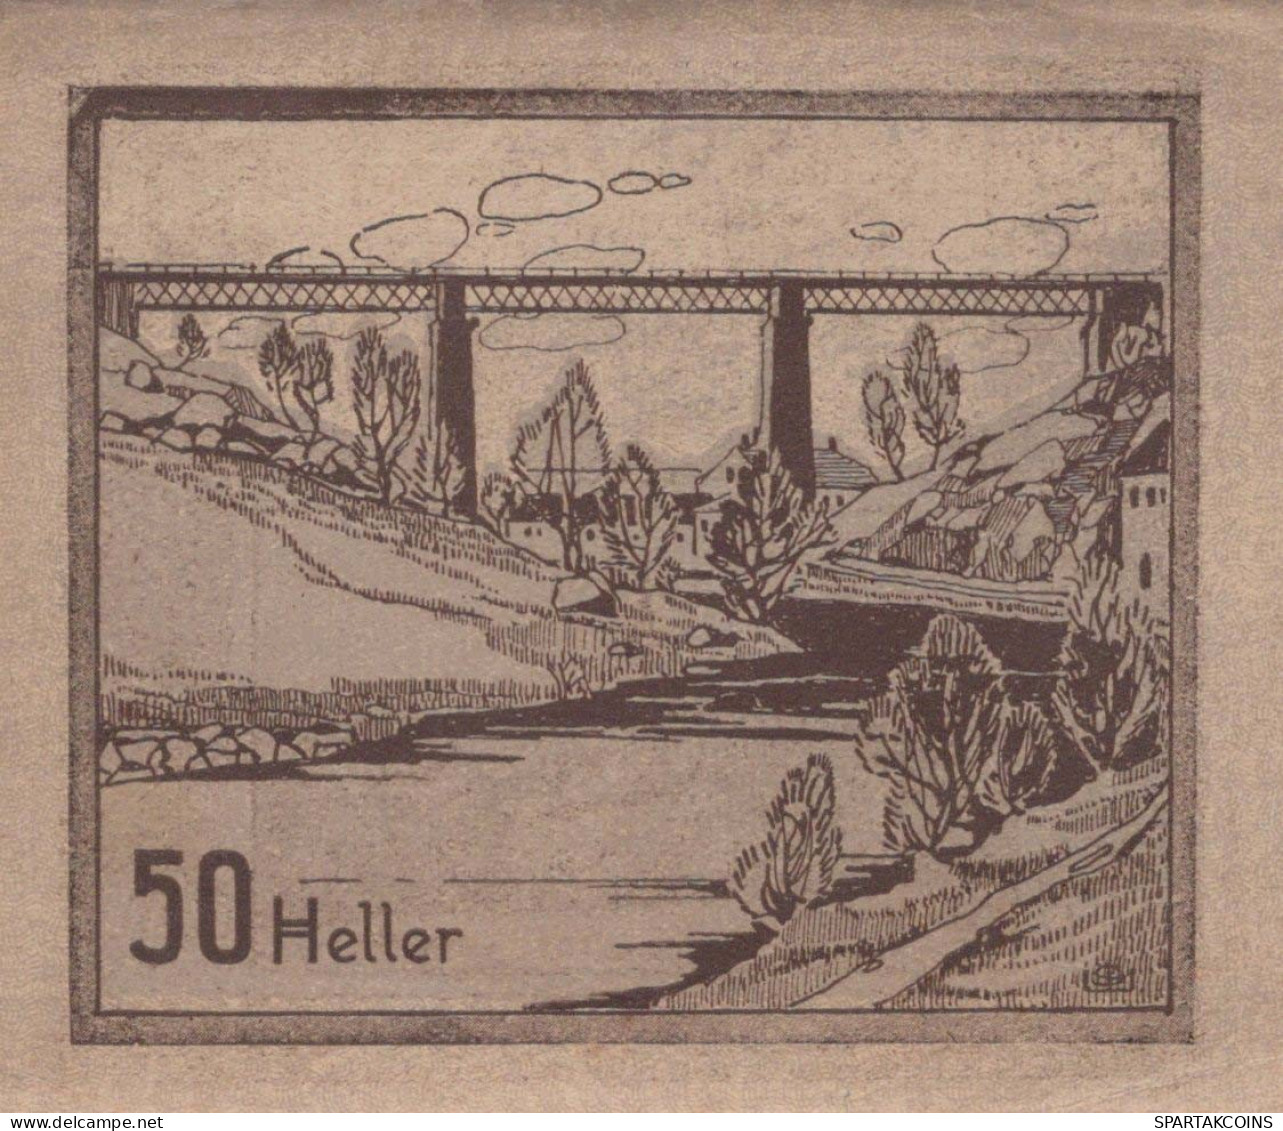 50 HELLER 1920 Stadt Prägraten In Tirol Österreich Notgeld Banknote #PE456 - [11] Emisiones Locales